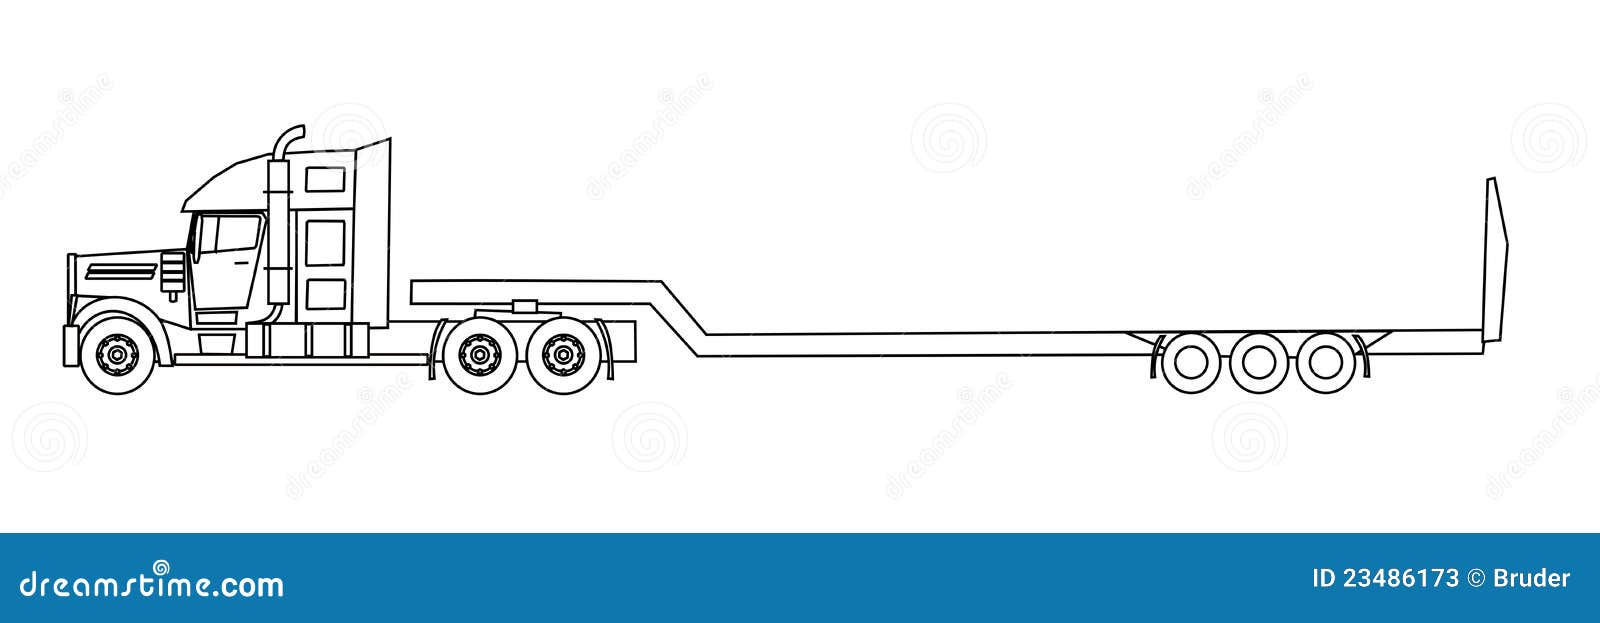 Semitrailer ciężarówka. Amerykańska ilustracyjna semitrailer stylu ciężarówka